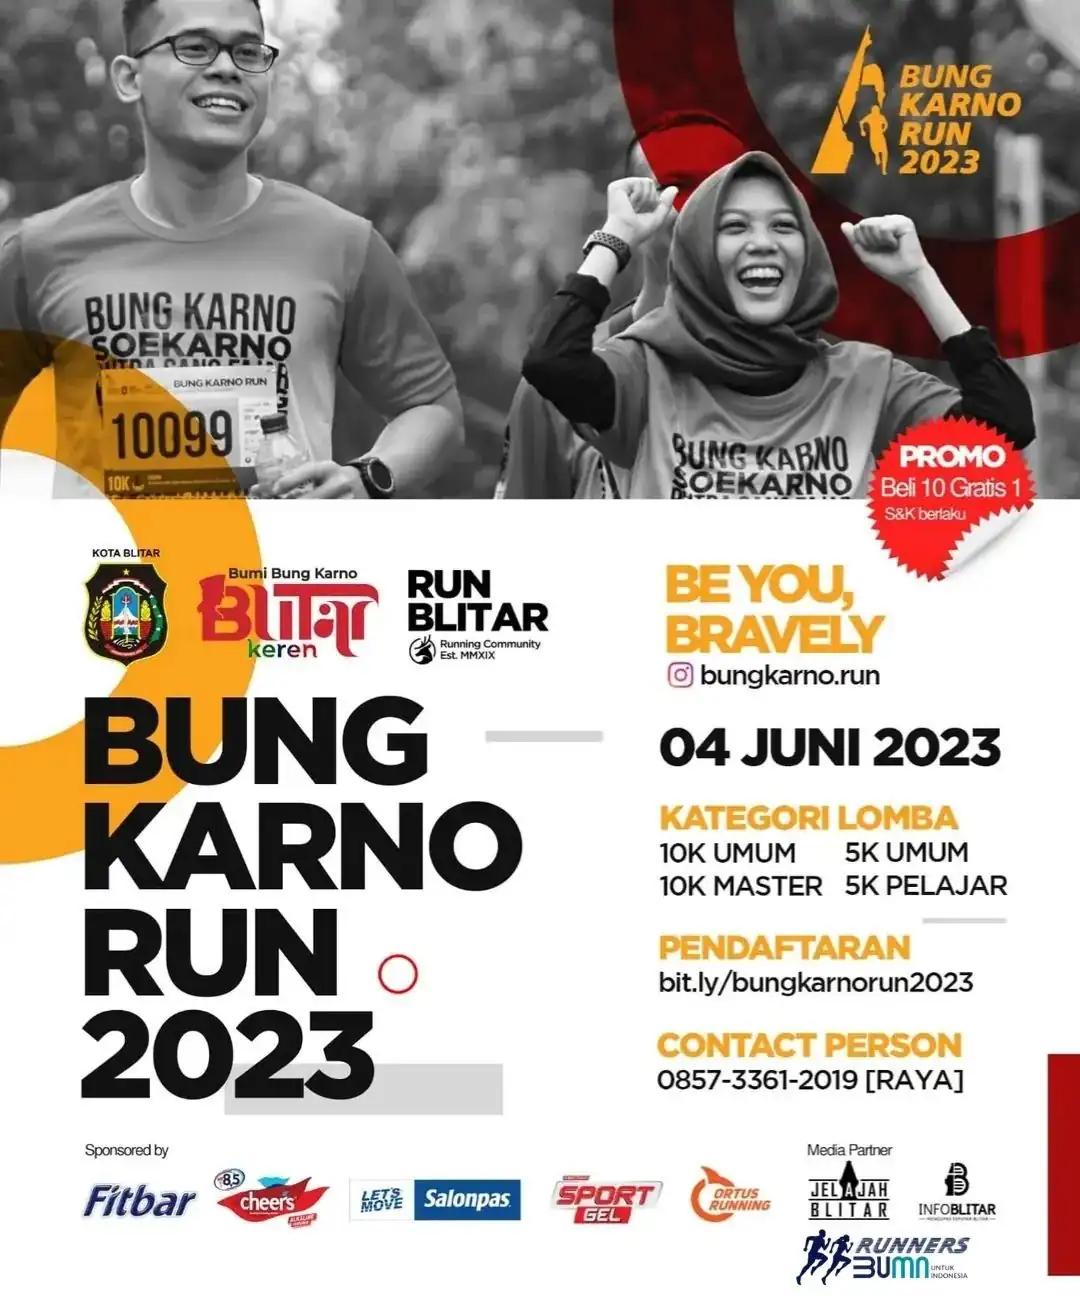 Bung Karno Run 2023